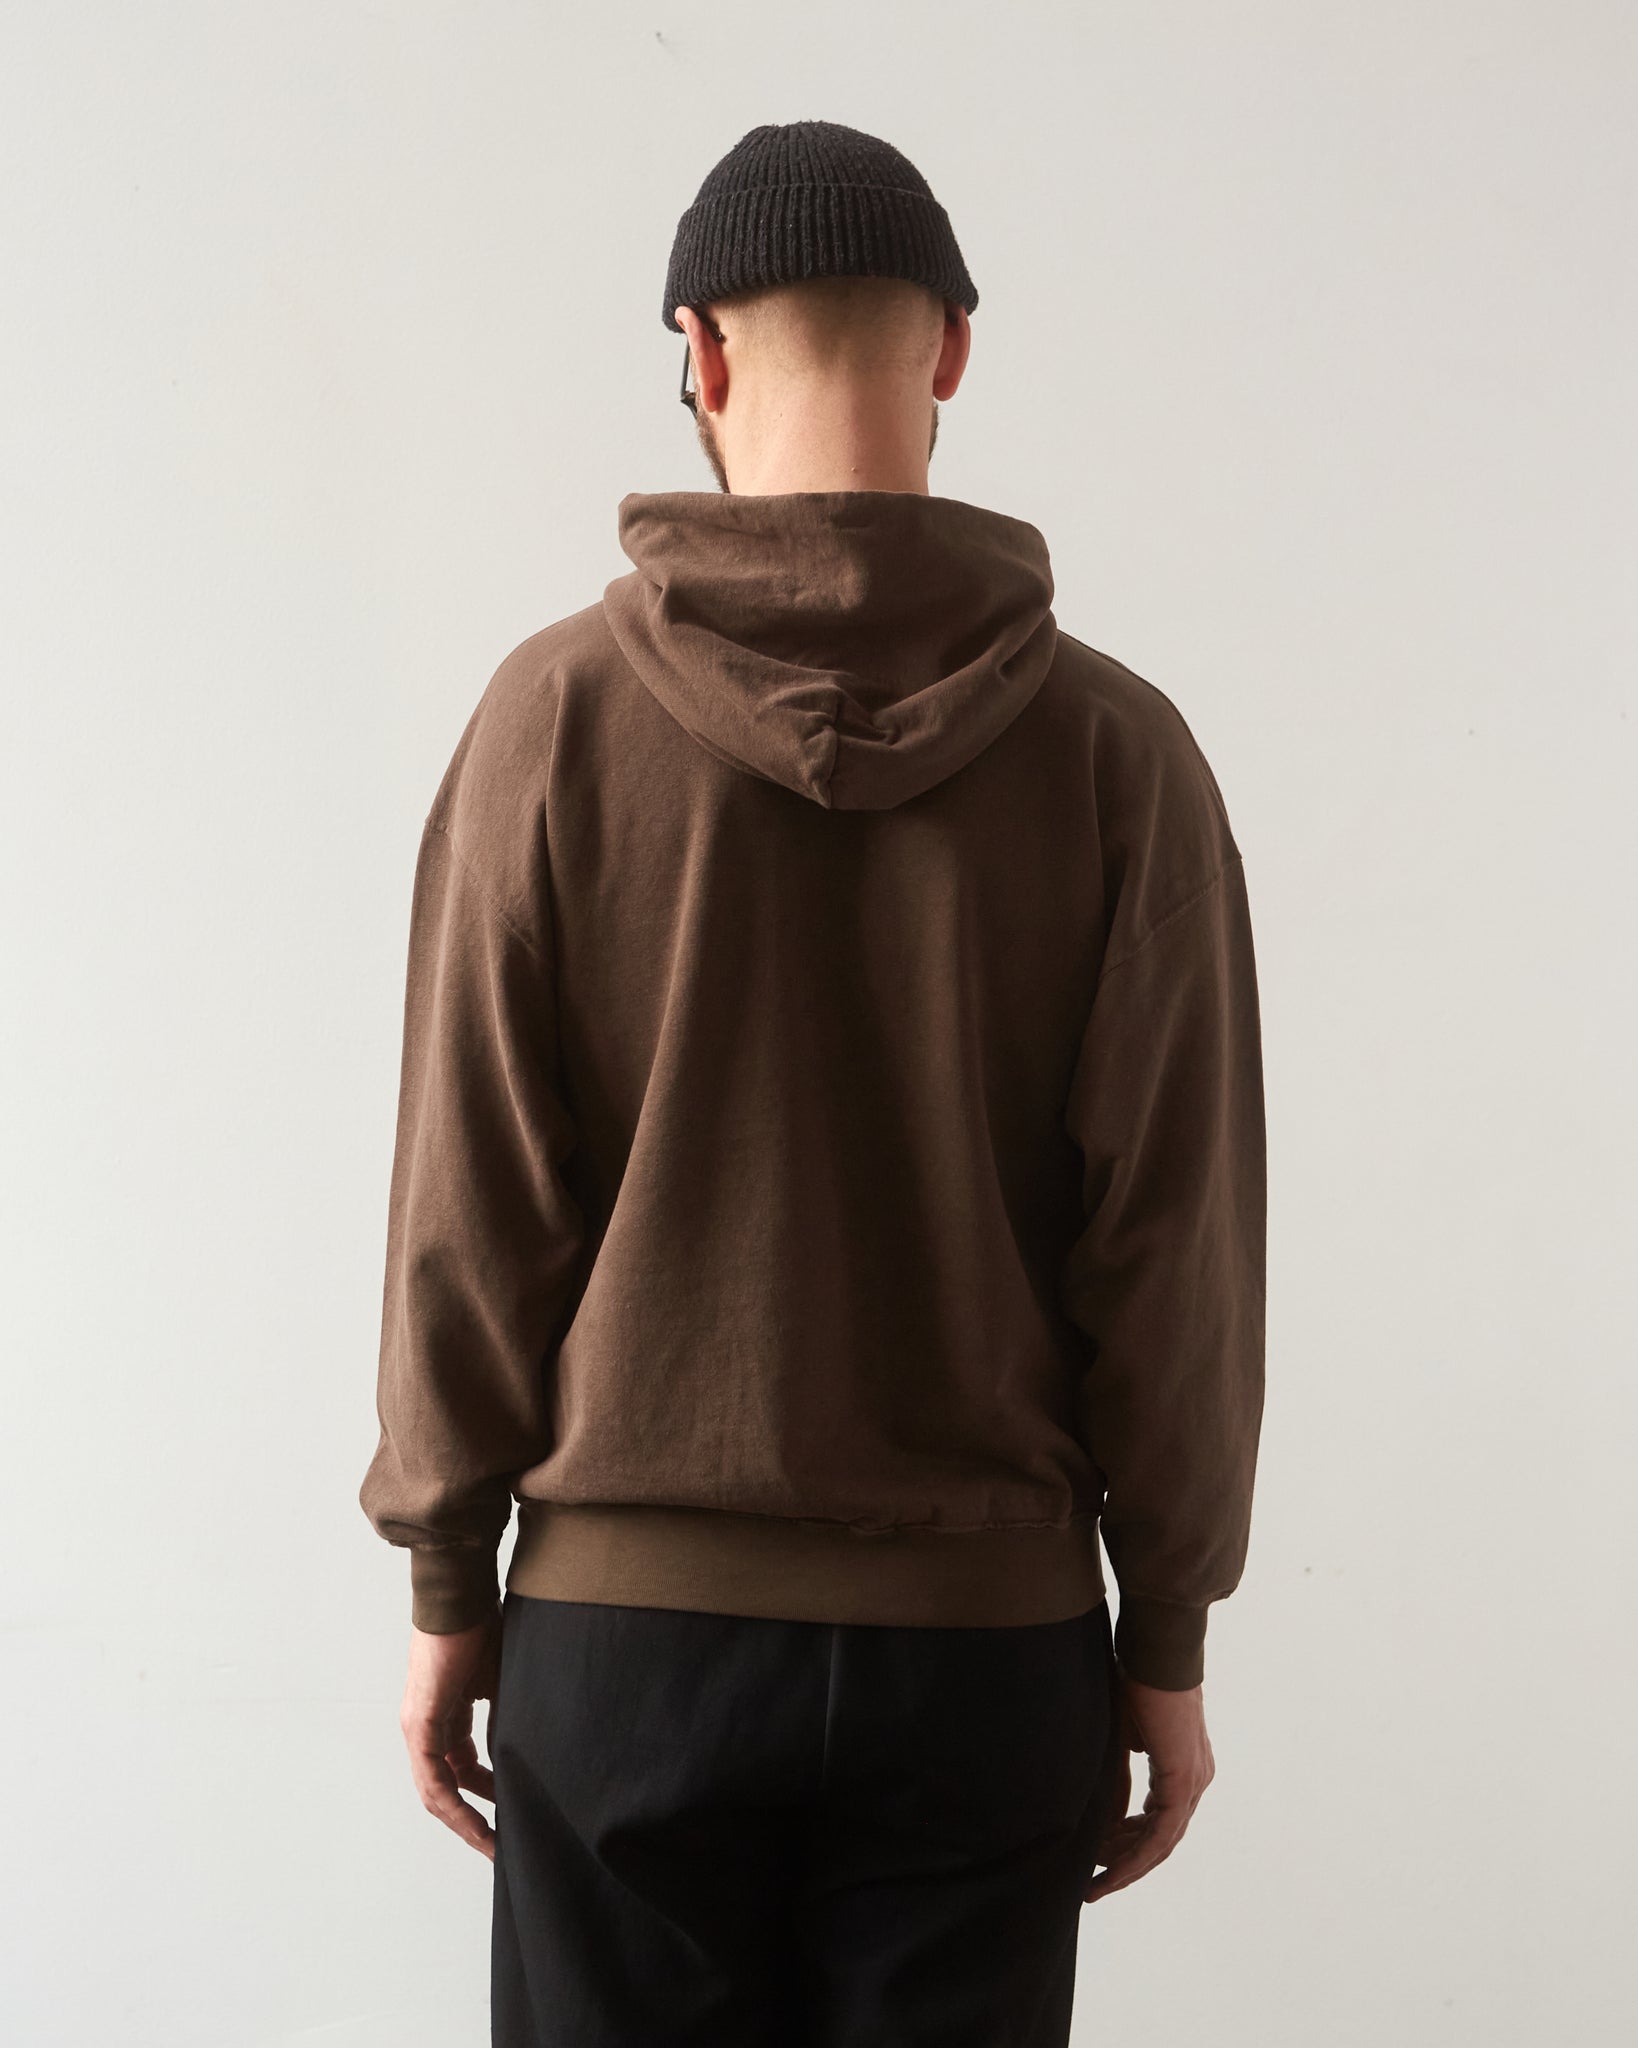 Evan Kinori Hooded Sweatshirt, Faded Brown